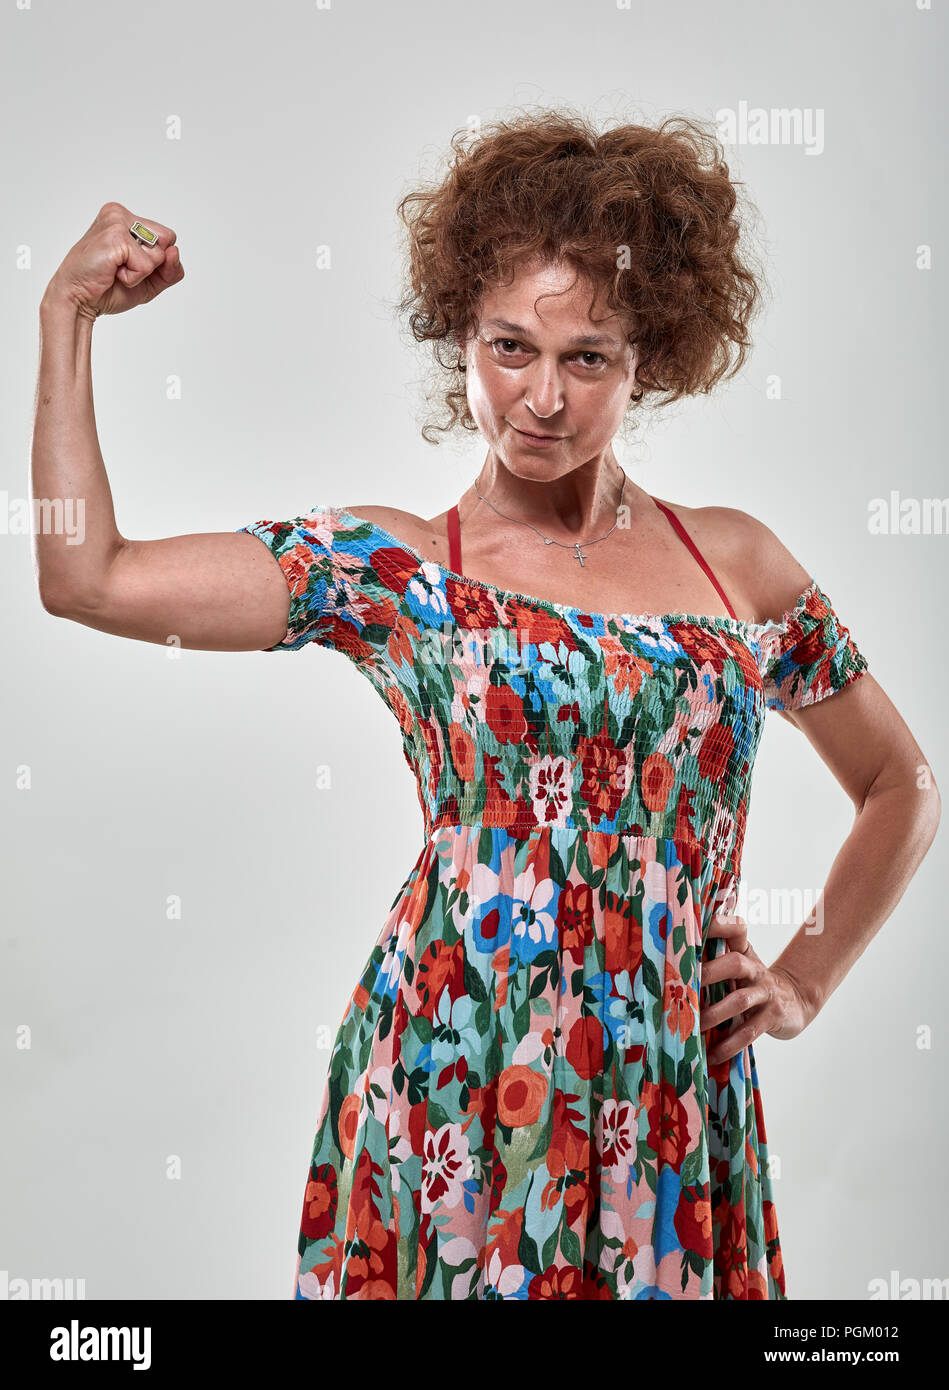 Girls power Metapher mit der reife Frau flexing Biceps Stockfotografie -  Alamy